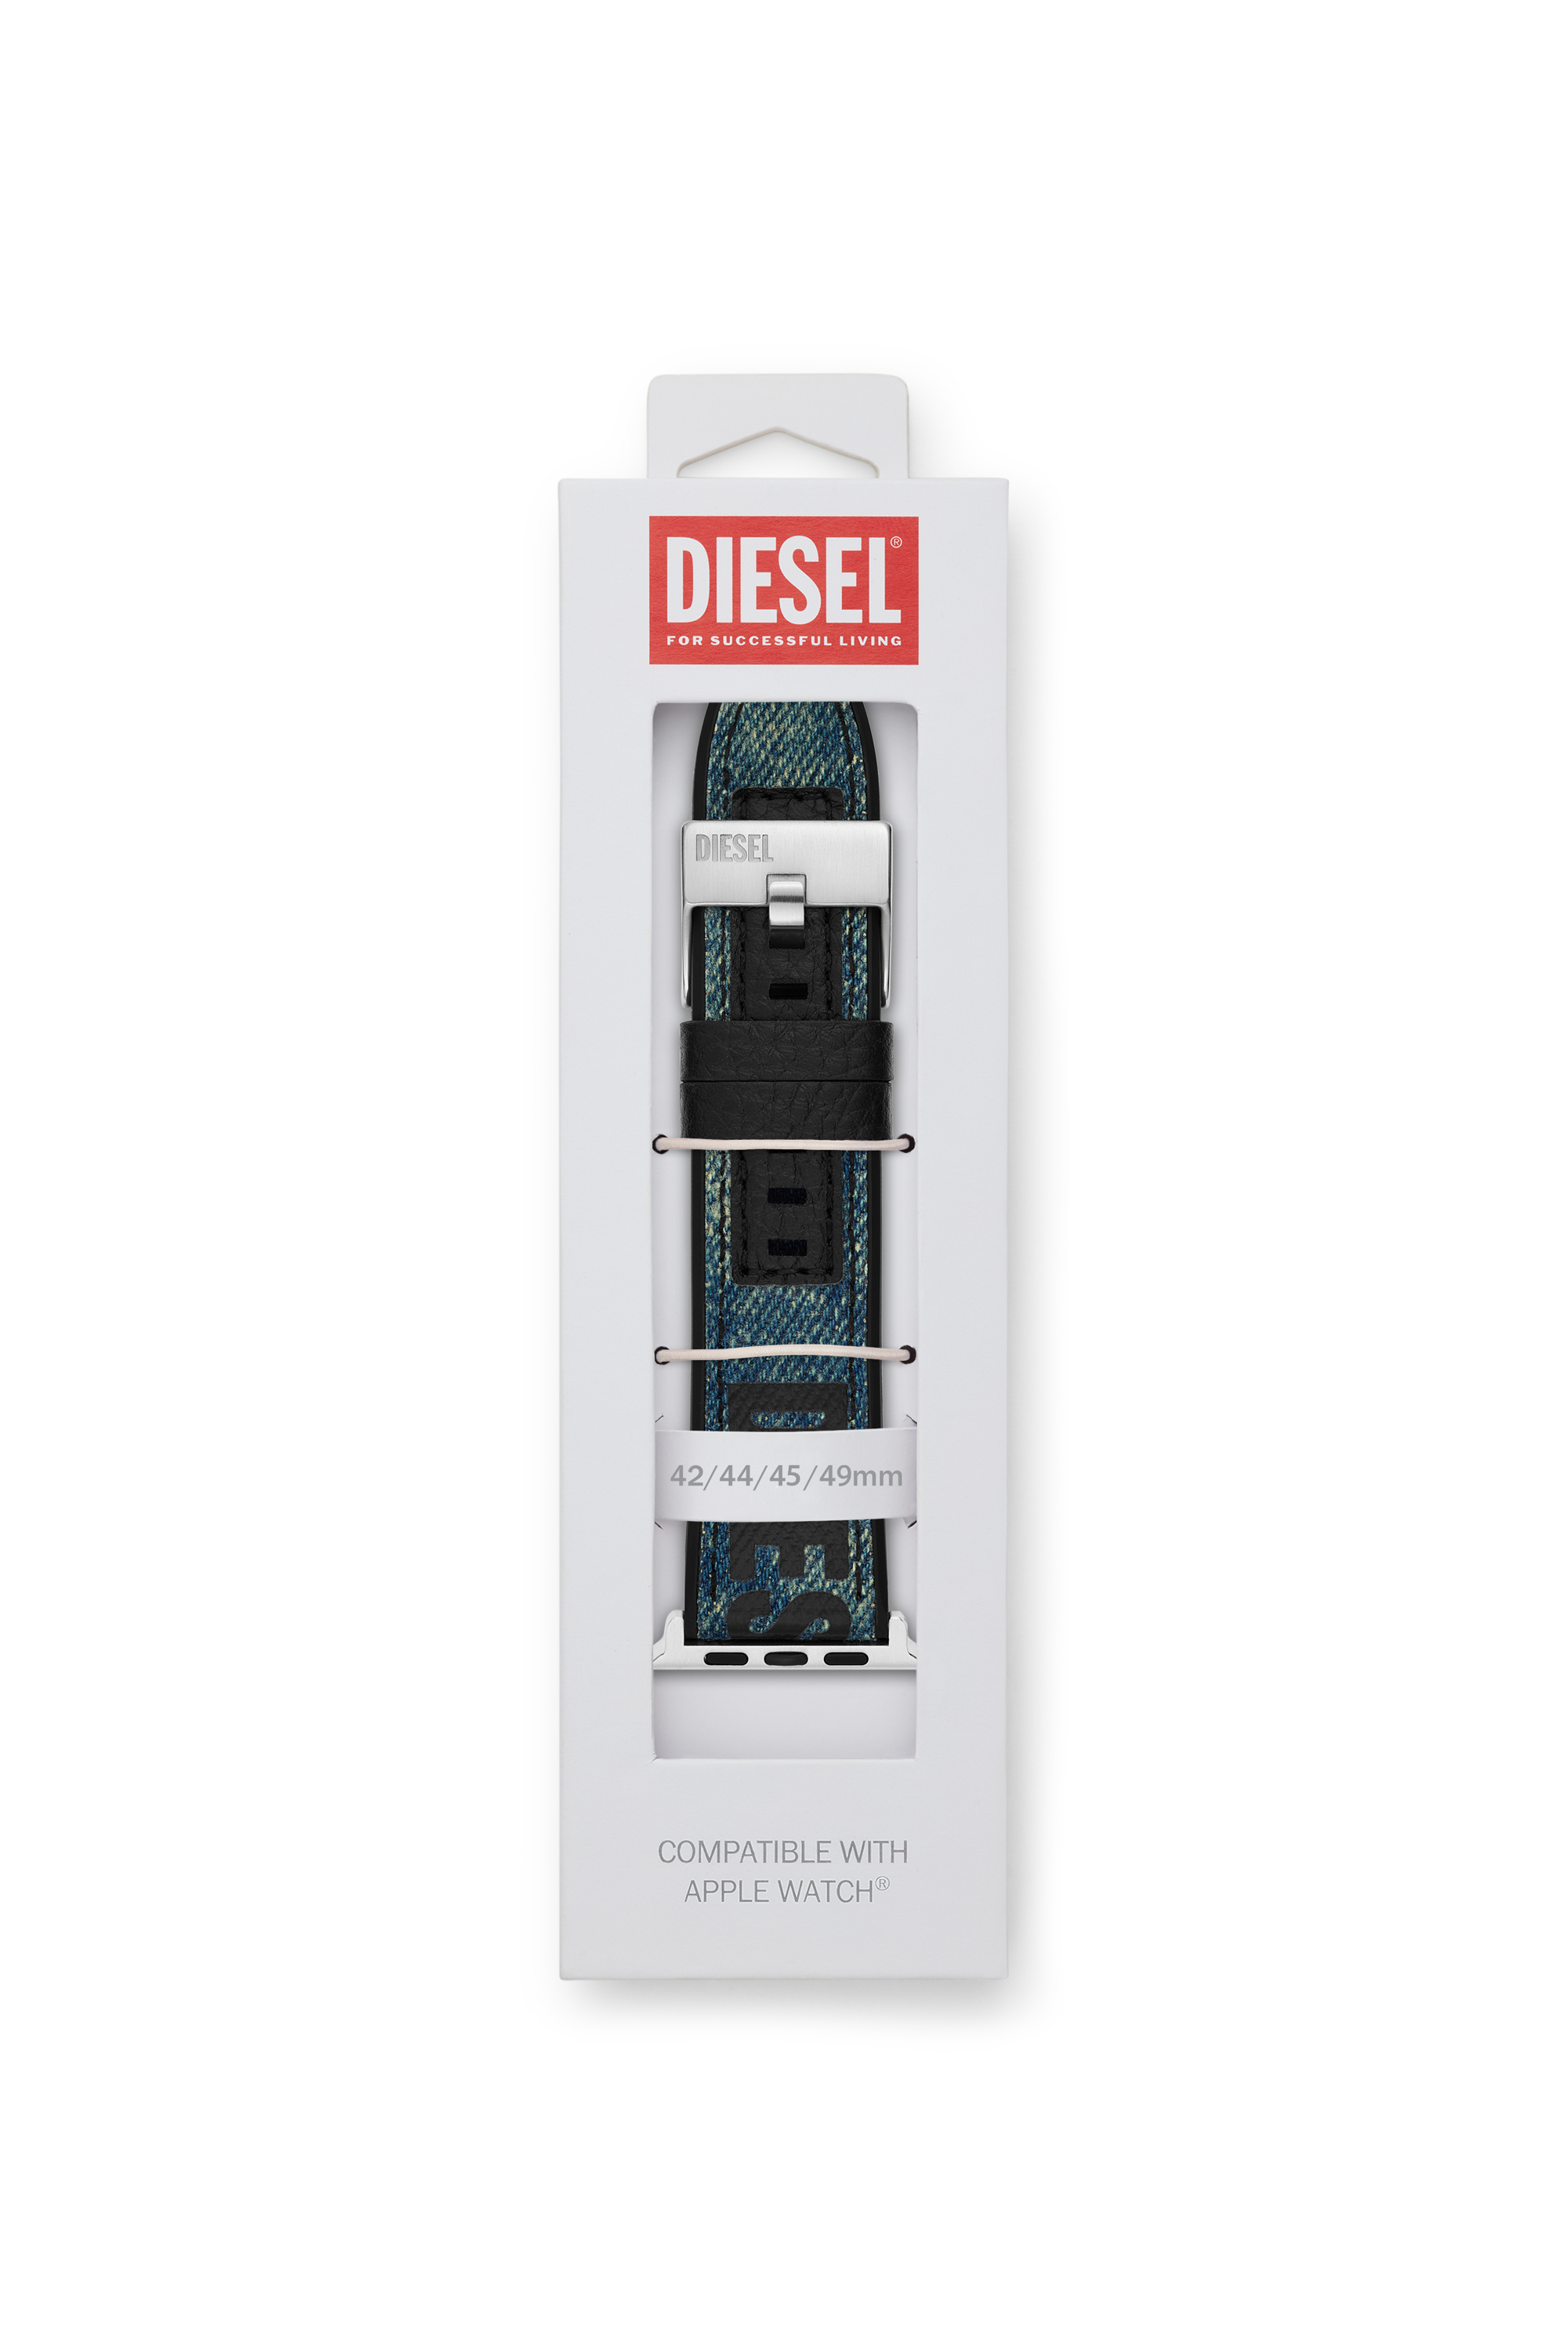 Diesel - DSS0016, Blau - Image 2